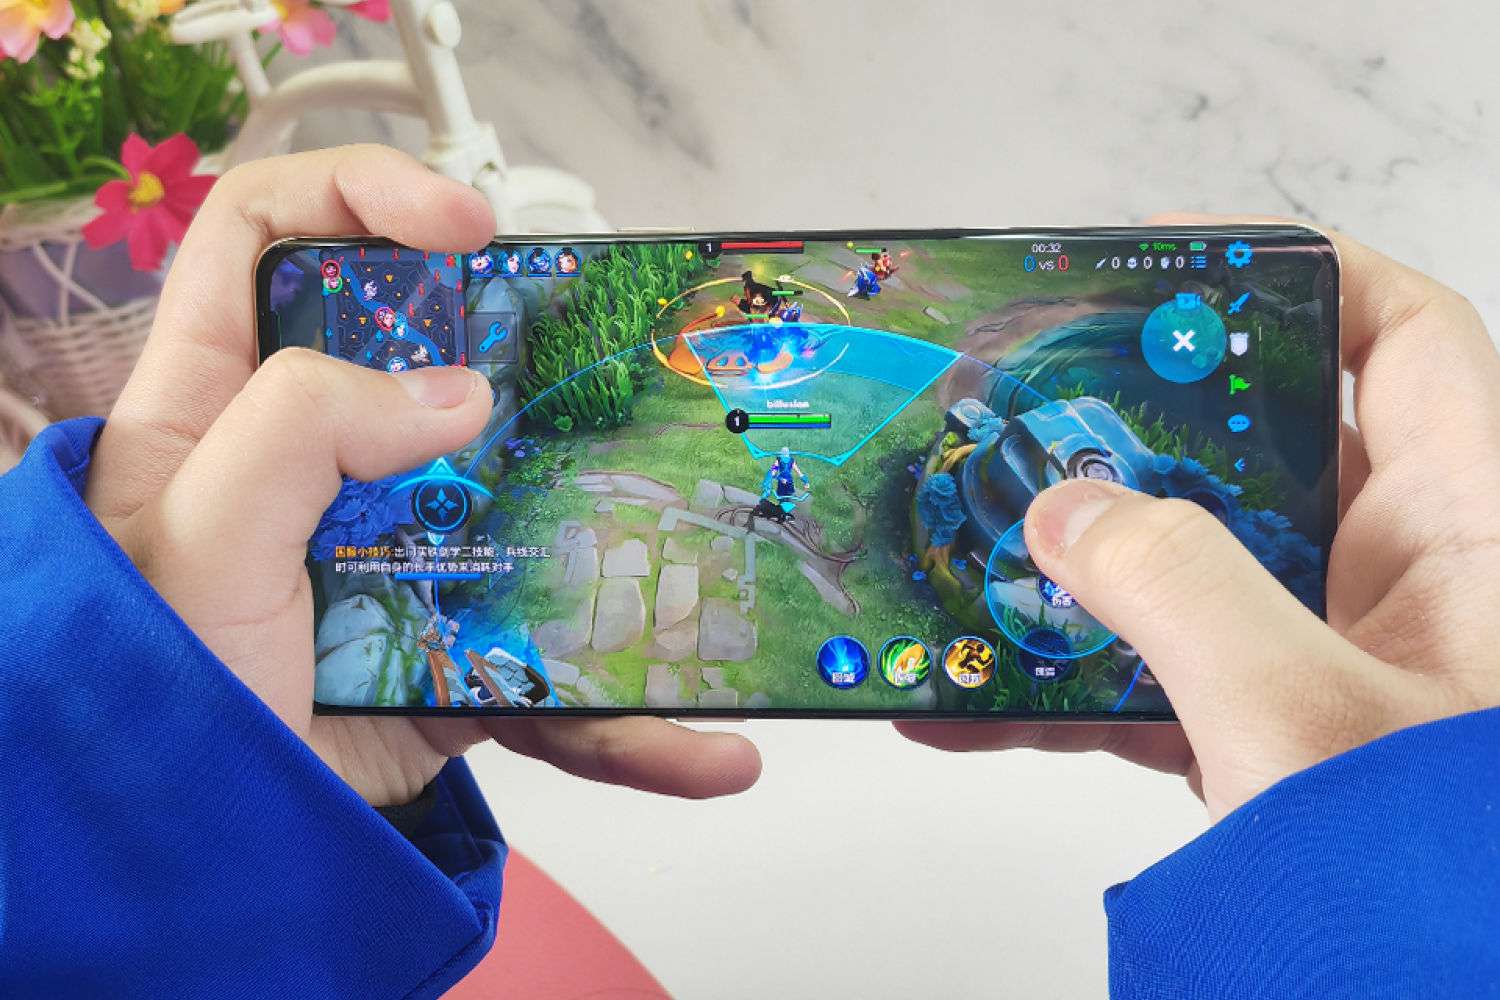 Thị trường game mobile Trung Quốc được dự đoán vượt 50 tỷ đô la vào năm 2028